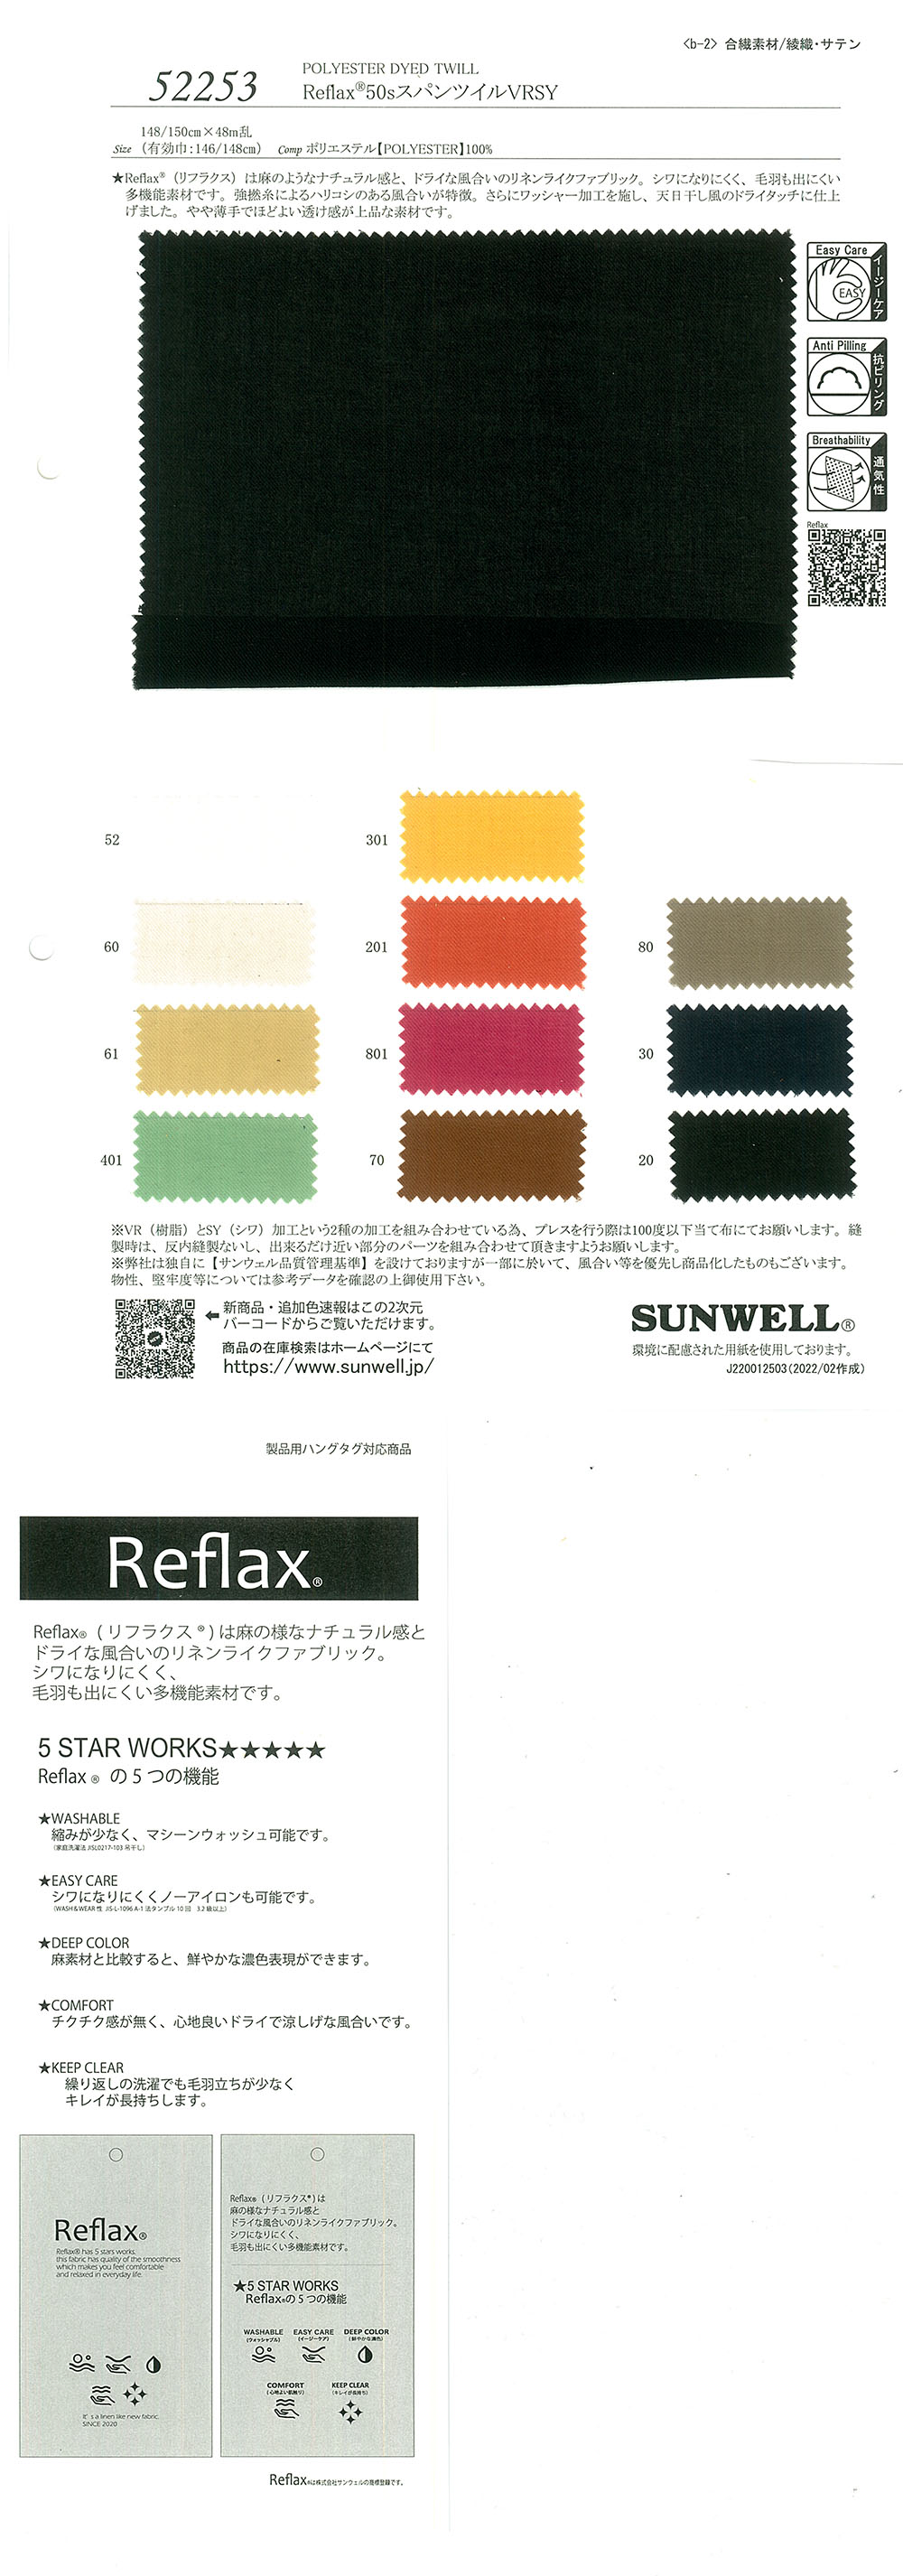 52253 Reflax(R)50 單紗瓷磚線[面料] SUNWELL